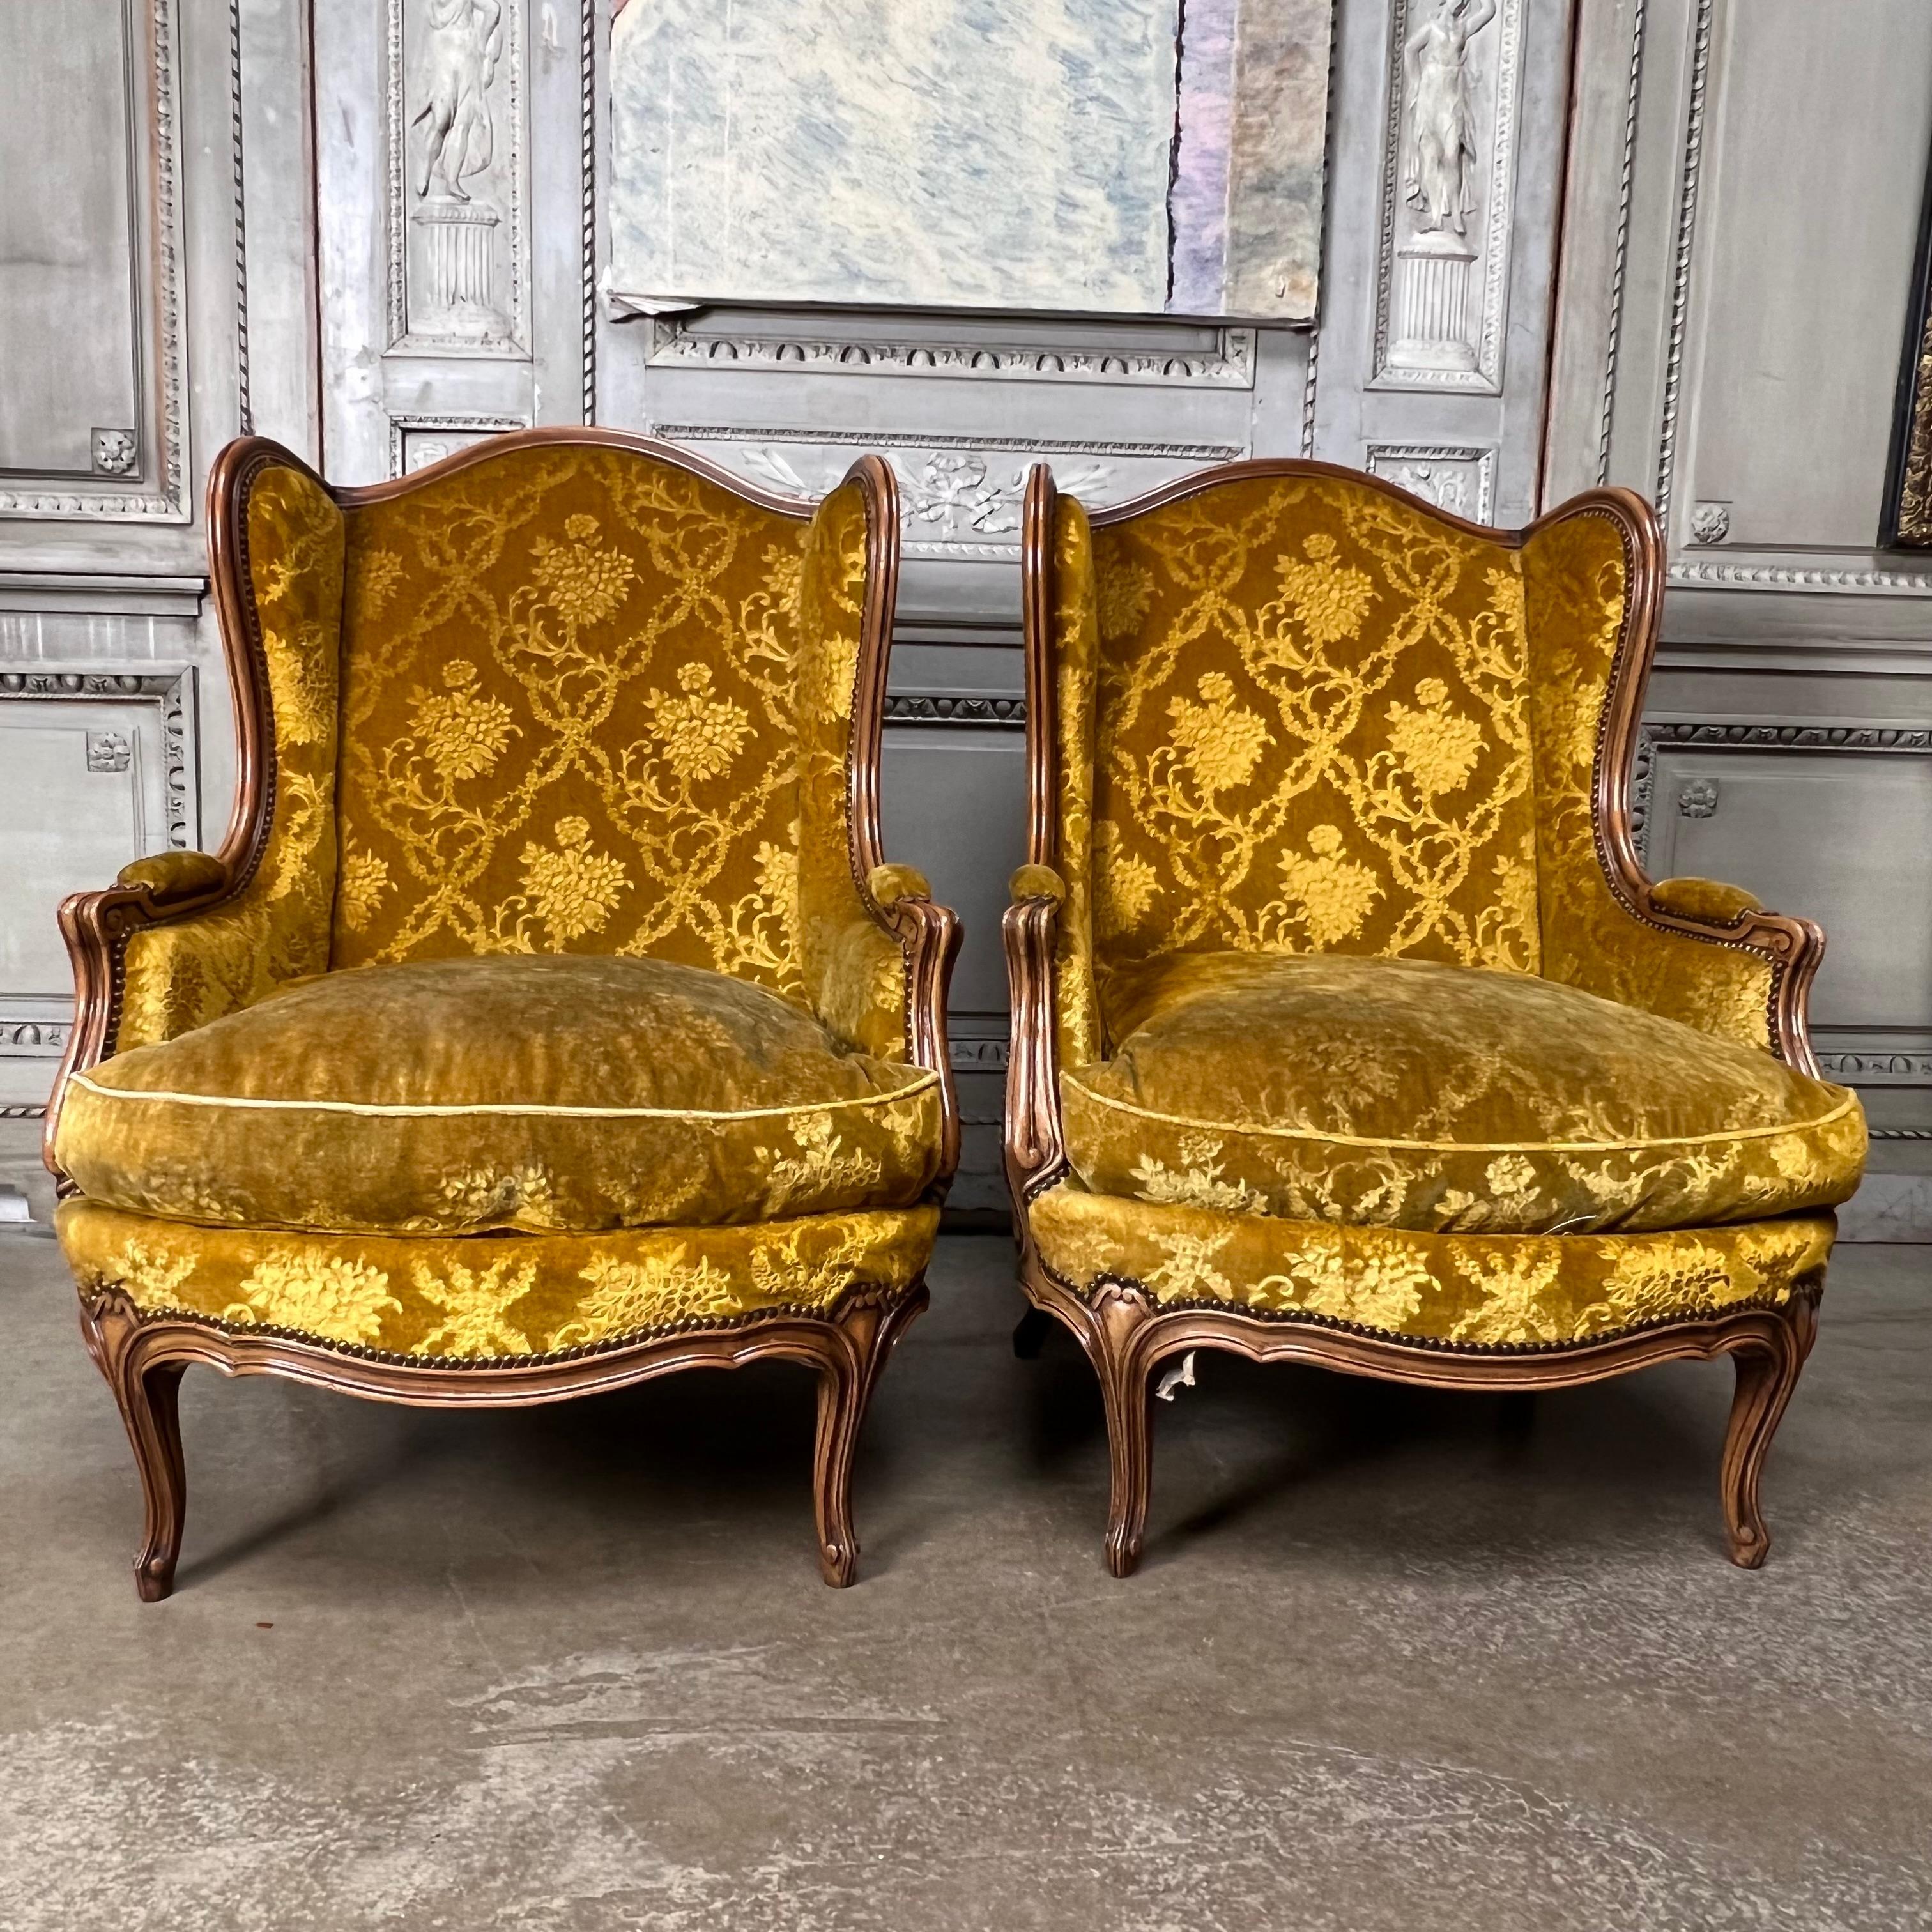 Ein großes Paar französischer geschnitzter Nussbaum-Flügelrücken im Louis XV-Stil.  
Diese bequemen Stühle haben eine schöne Patina und sind in gutem Zustand. Sie sind groß und werden für eine große Person bequem sein.  Der Stoff ist alt, könnte